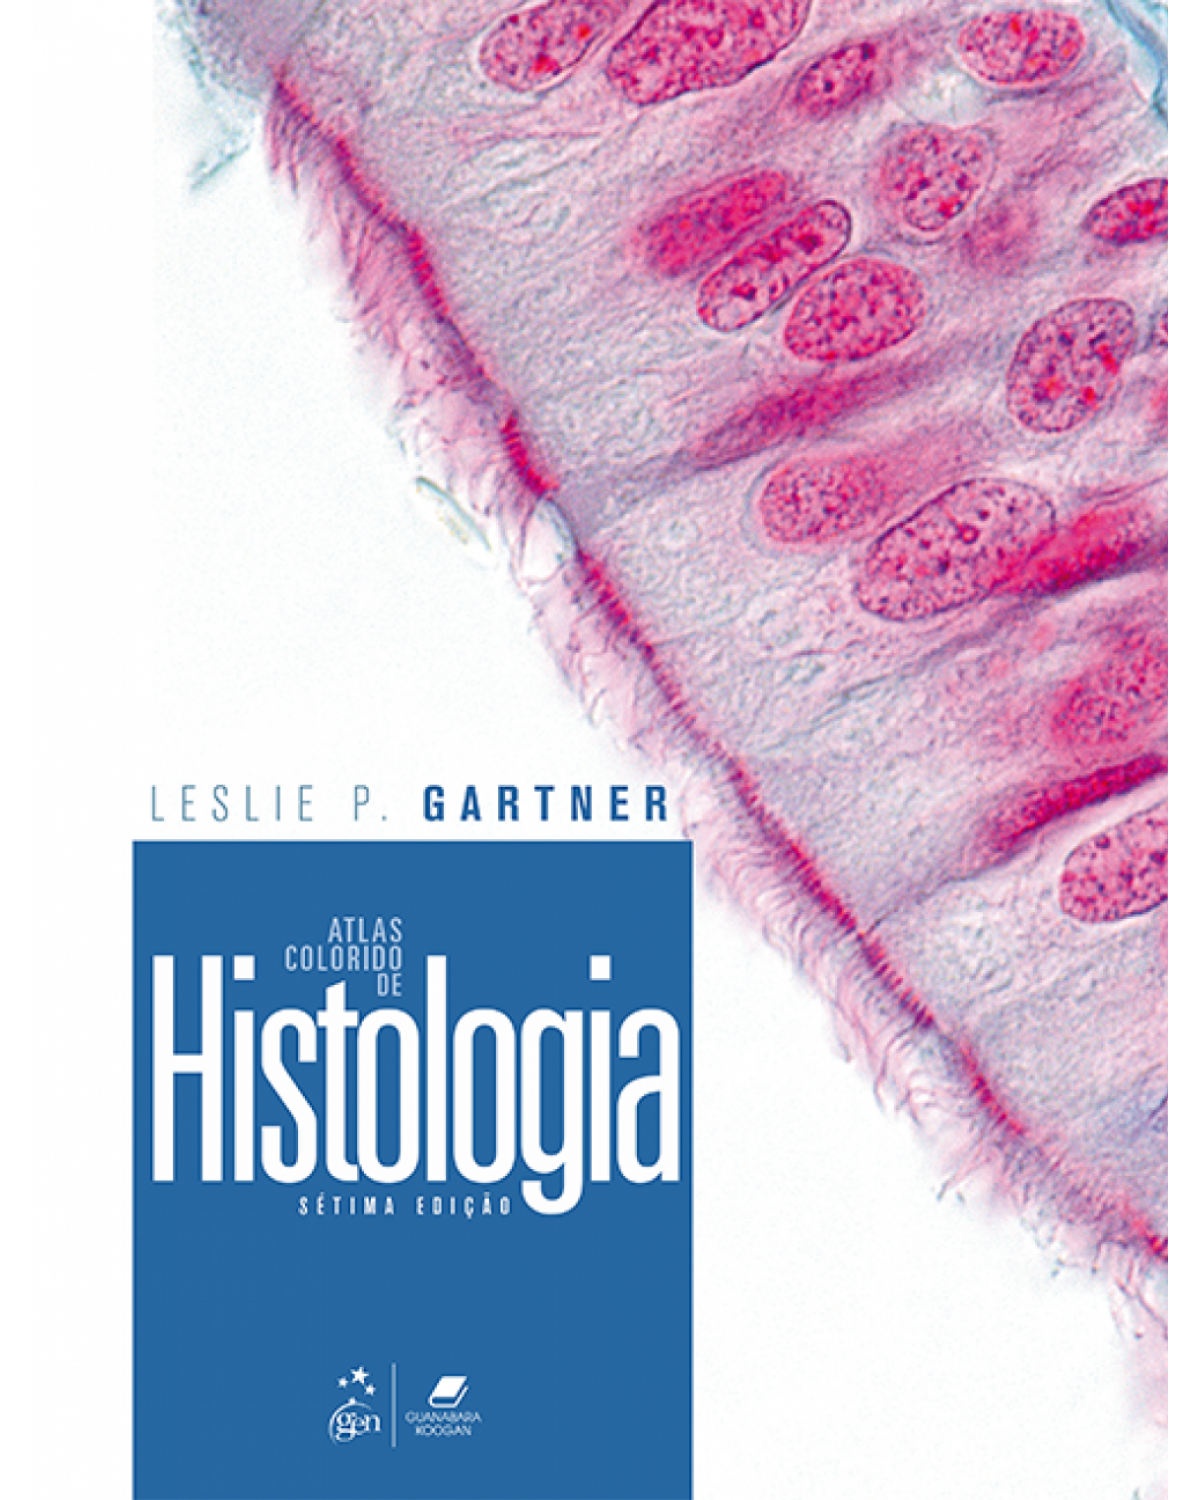 Atlas colorido de histologia - 7ª Edição | 2018